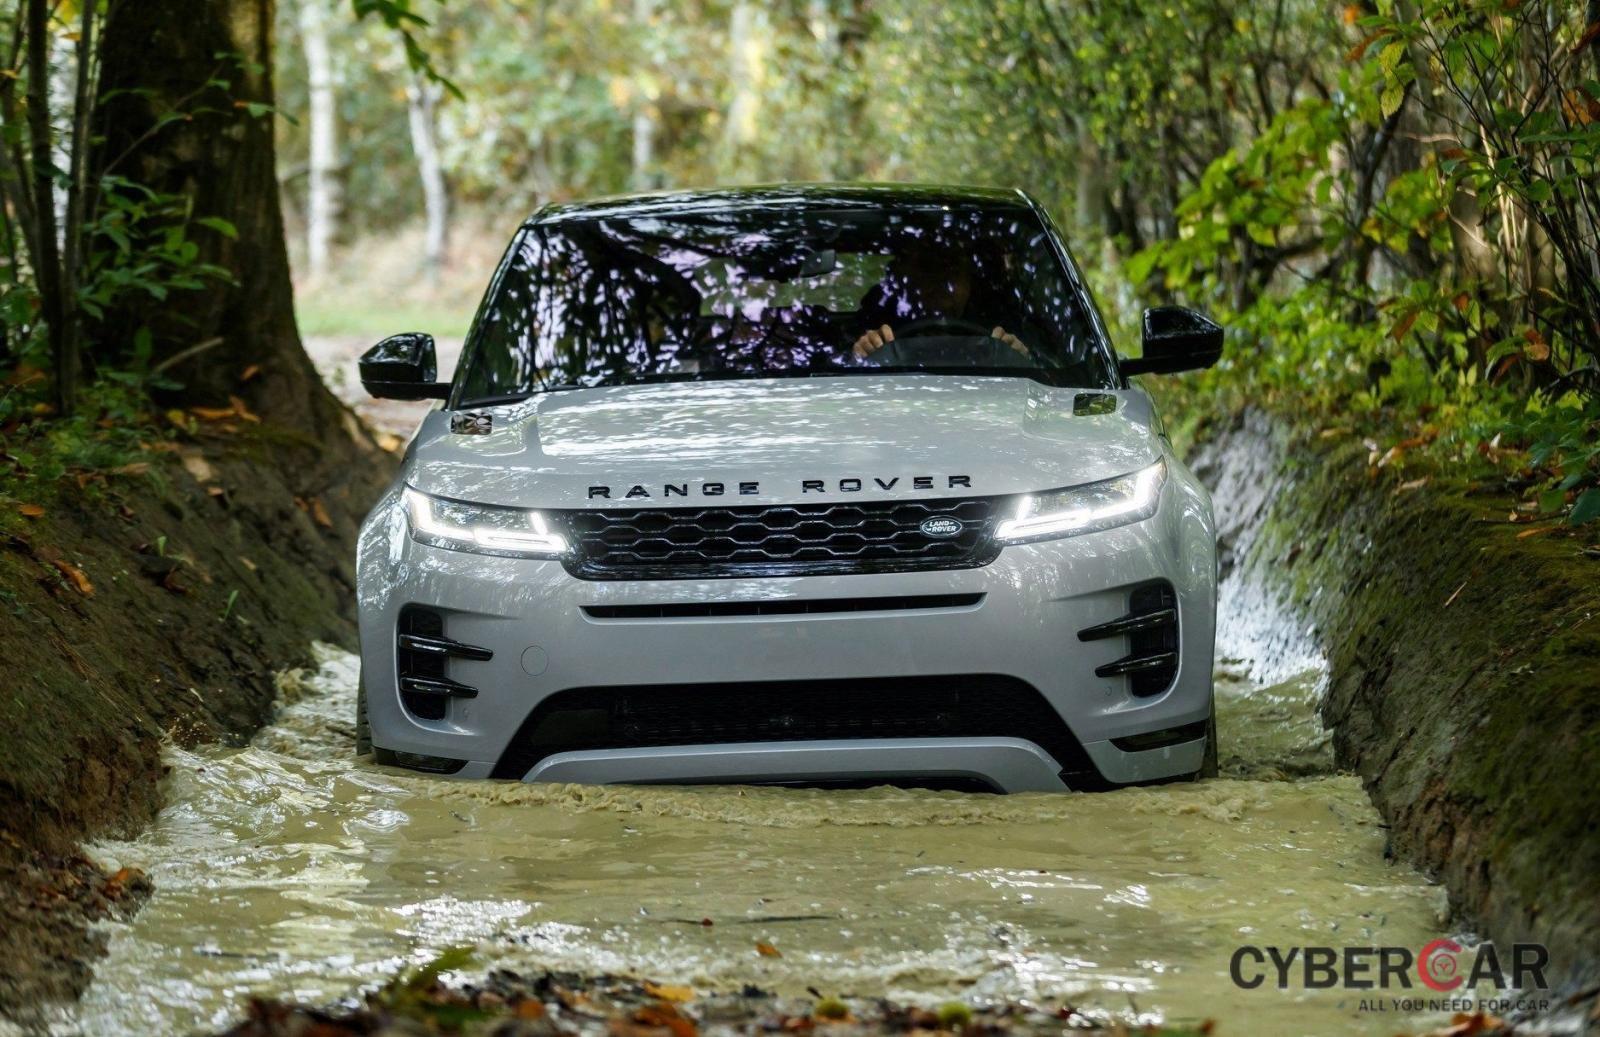 Land Rover Ranger Rover có thể 'lội nước' gần 1m nhờ khoảng sáng gầm xe cao.